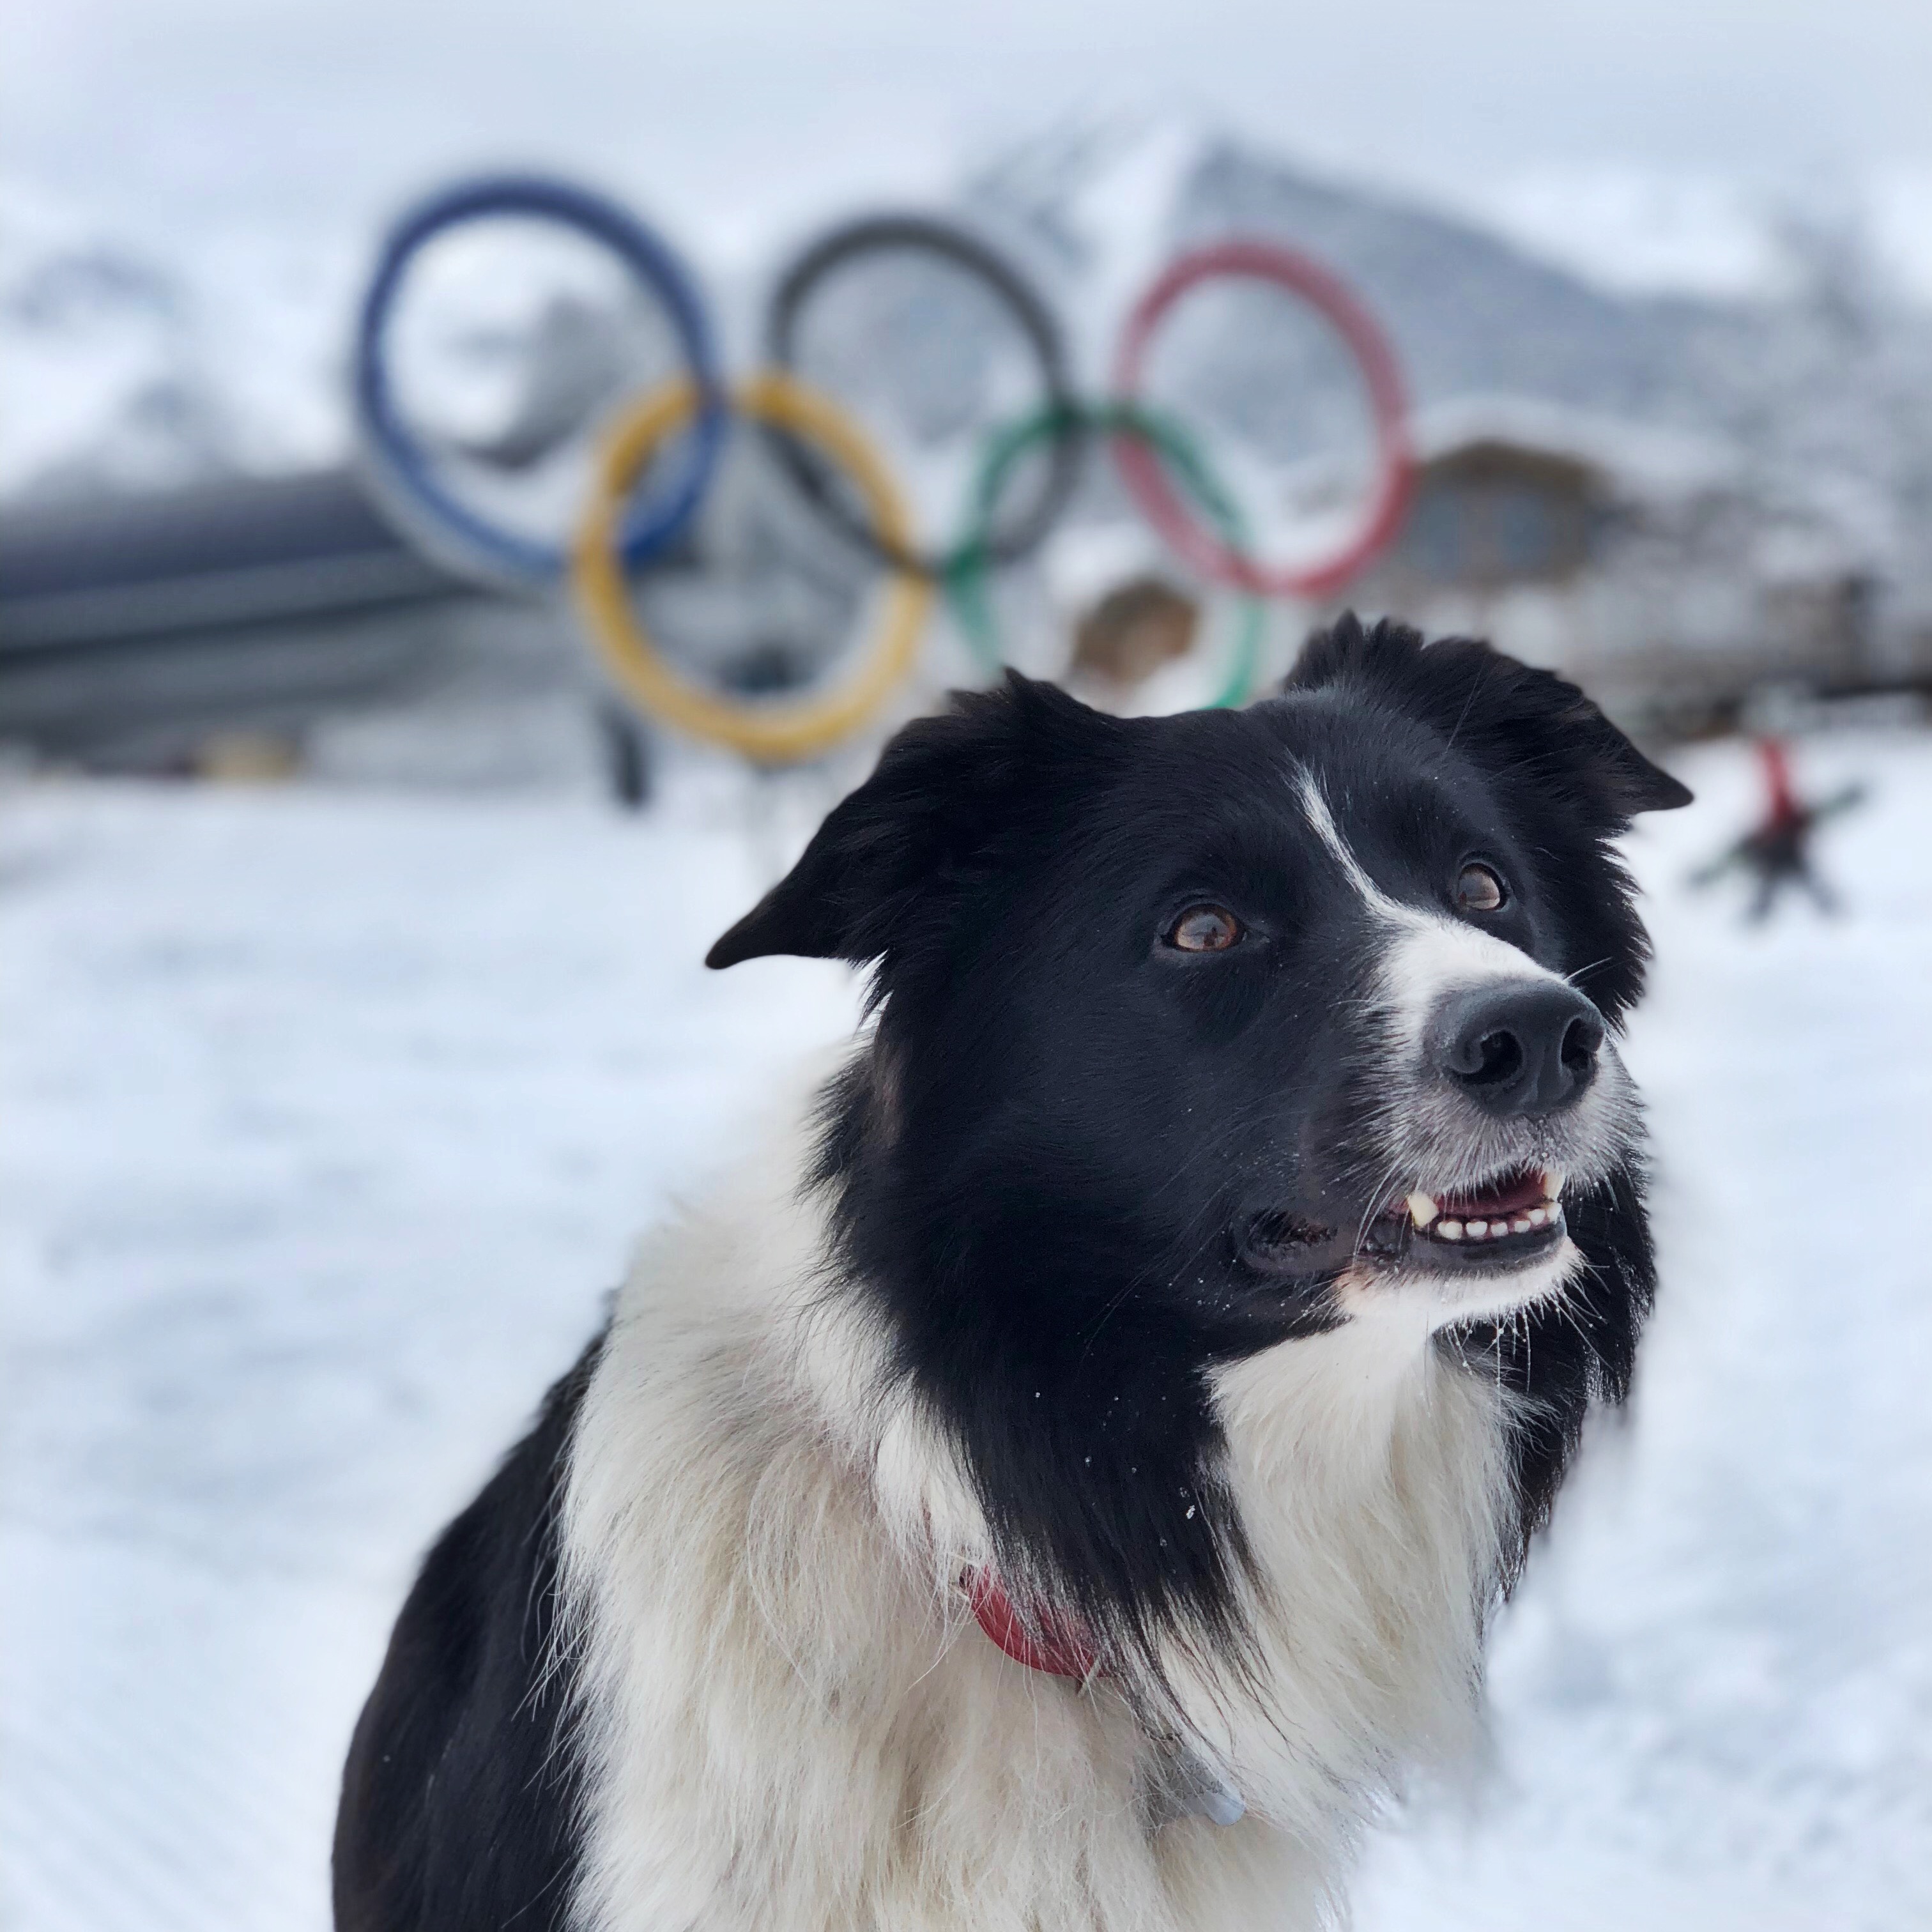 пес на фоне олимпийского знака